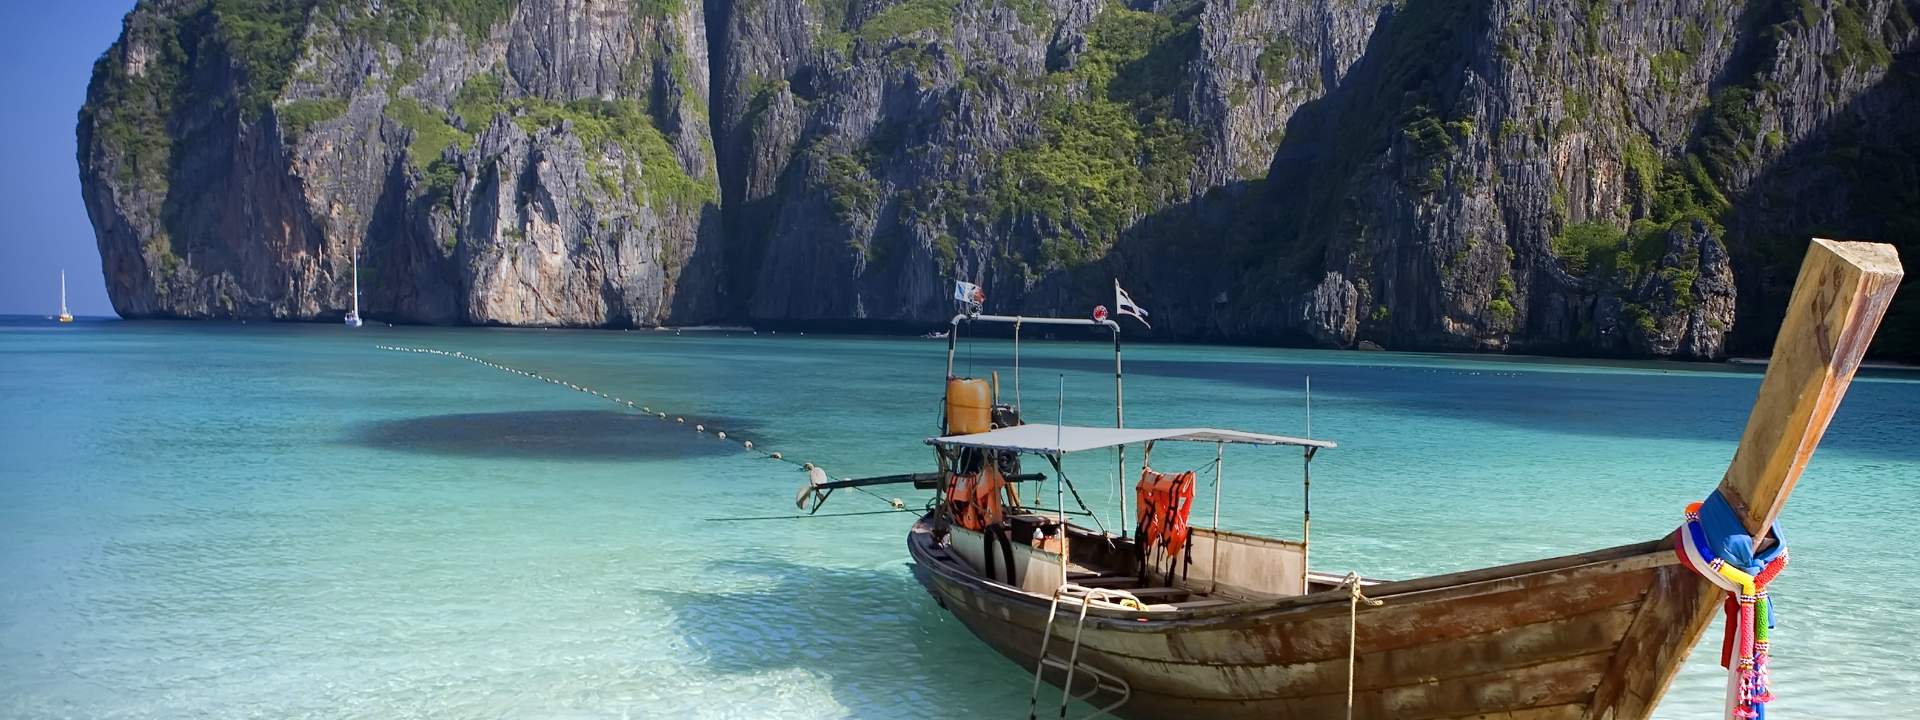 Le più belle isole delle Andamane in catamarano